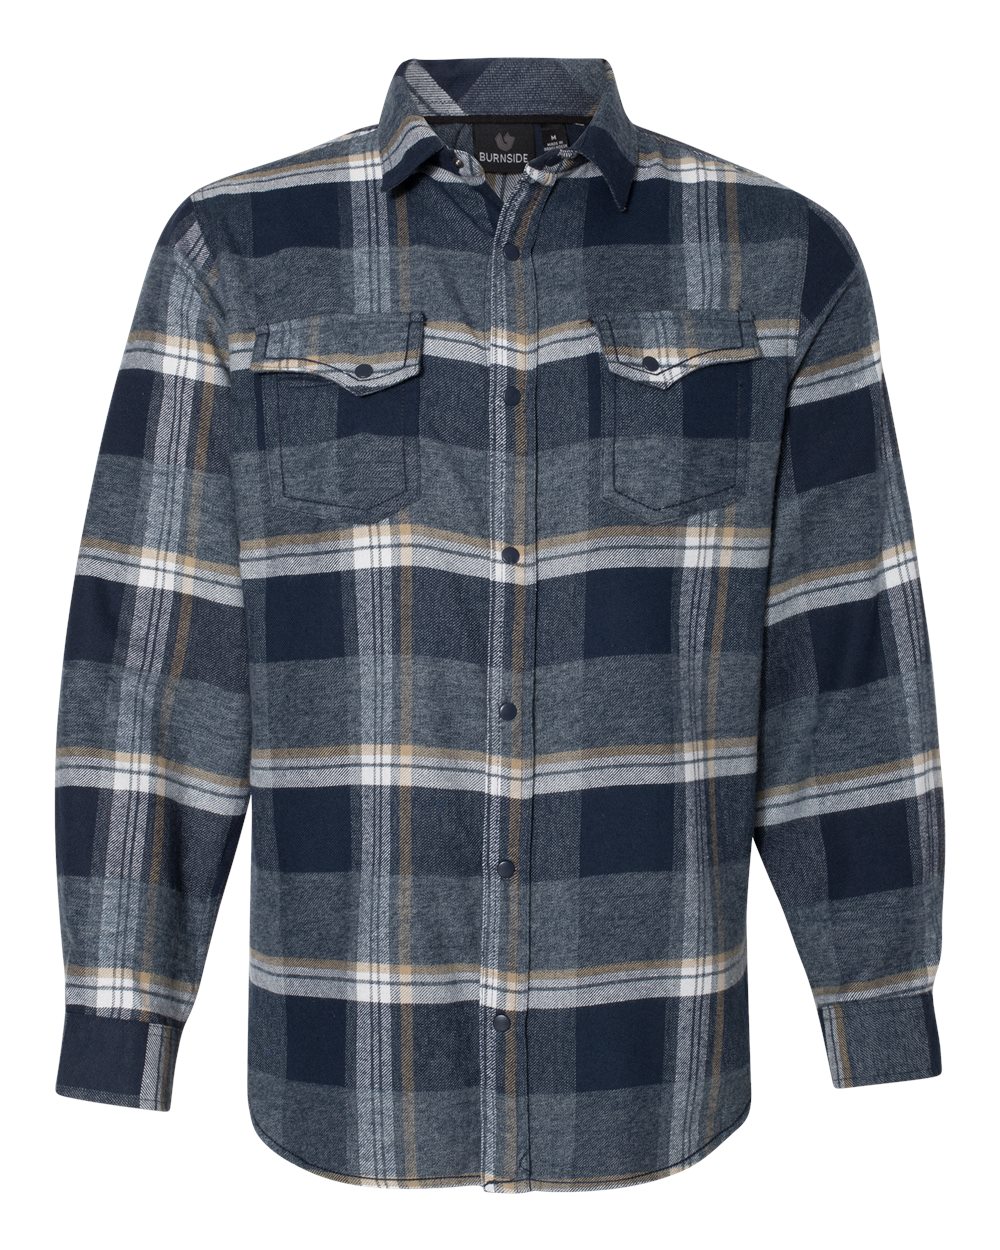 Burnside 8219 - Men's Snap-Front Plaid Flannel Shirt